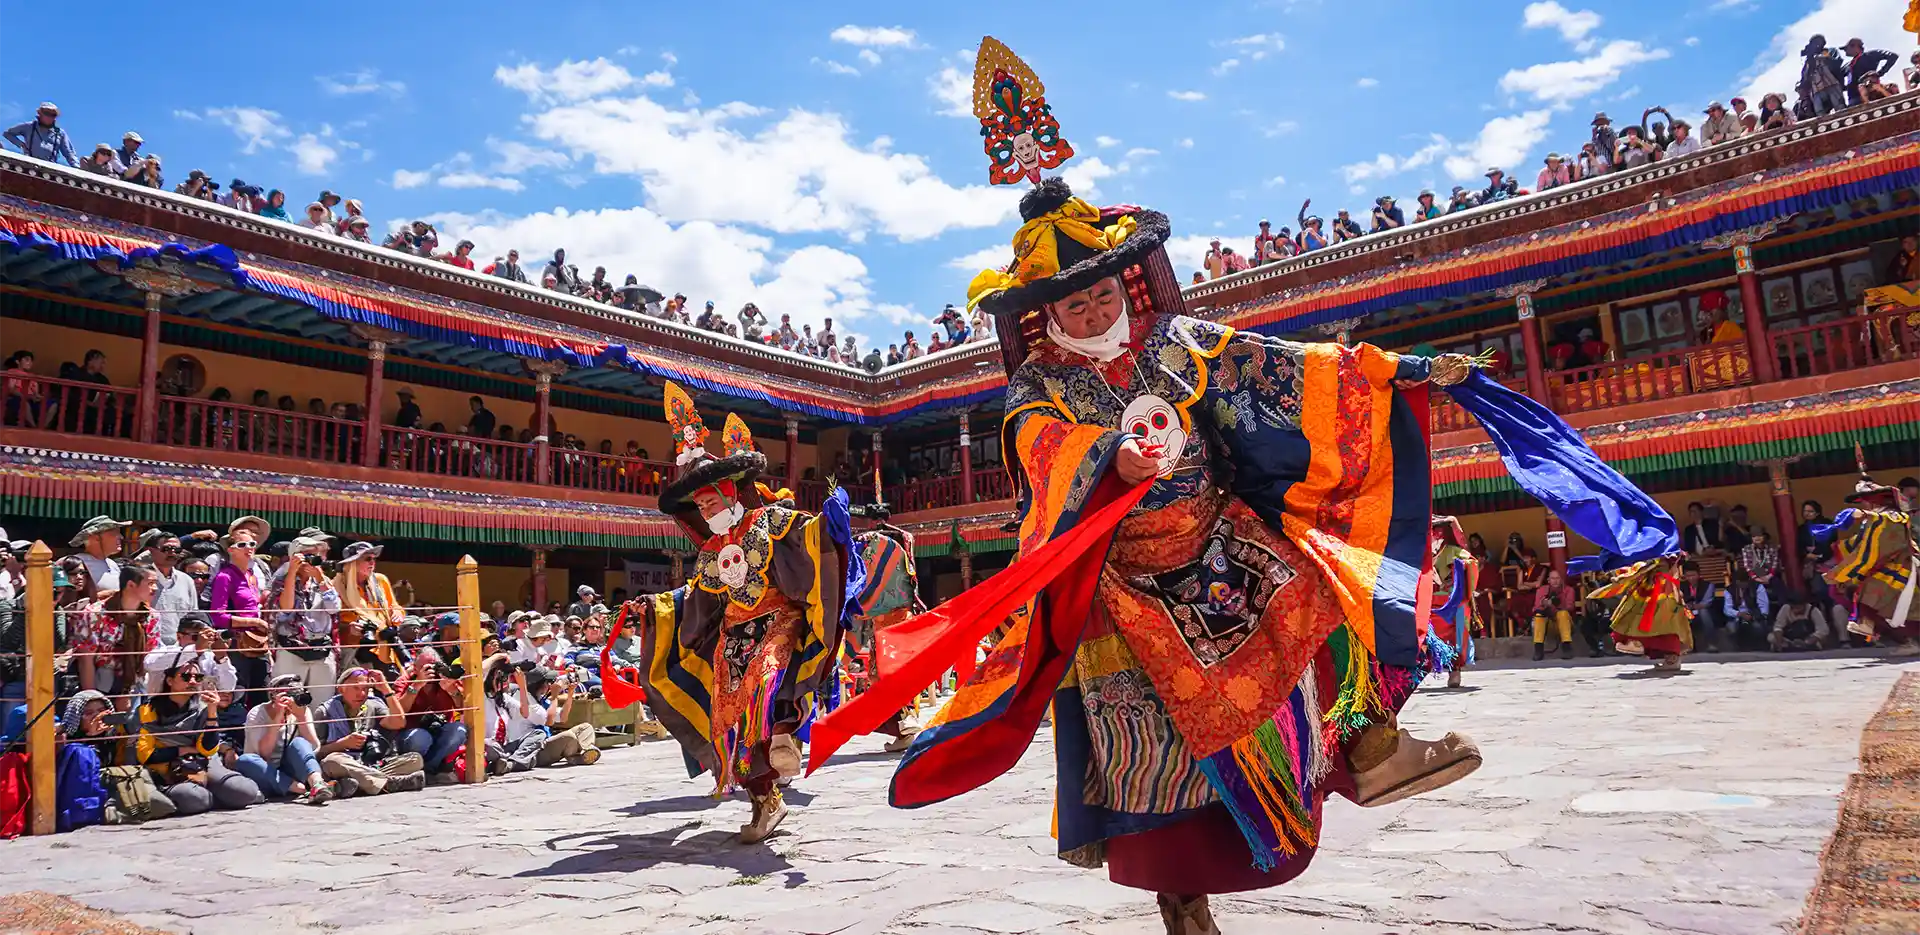 Hemis festival in Ladakh